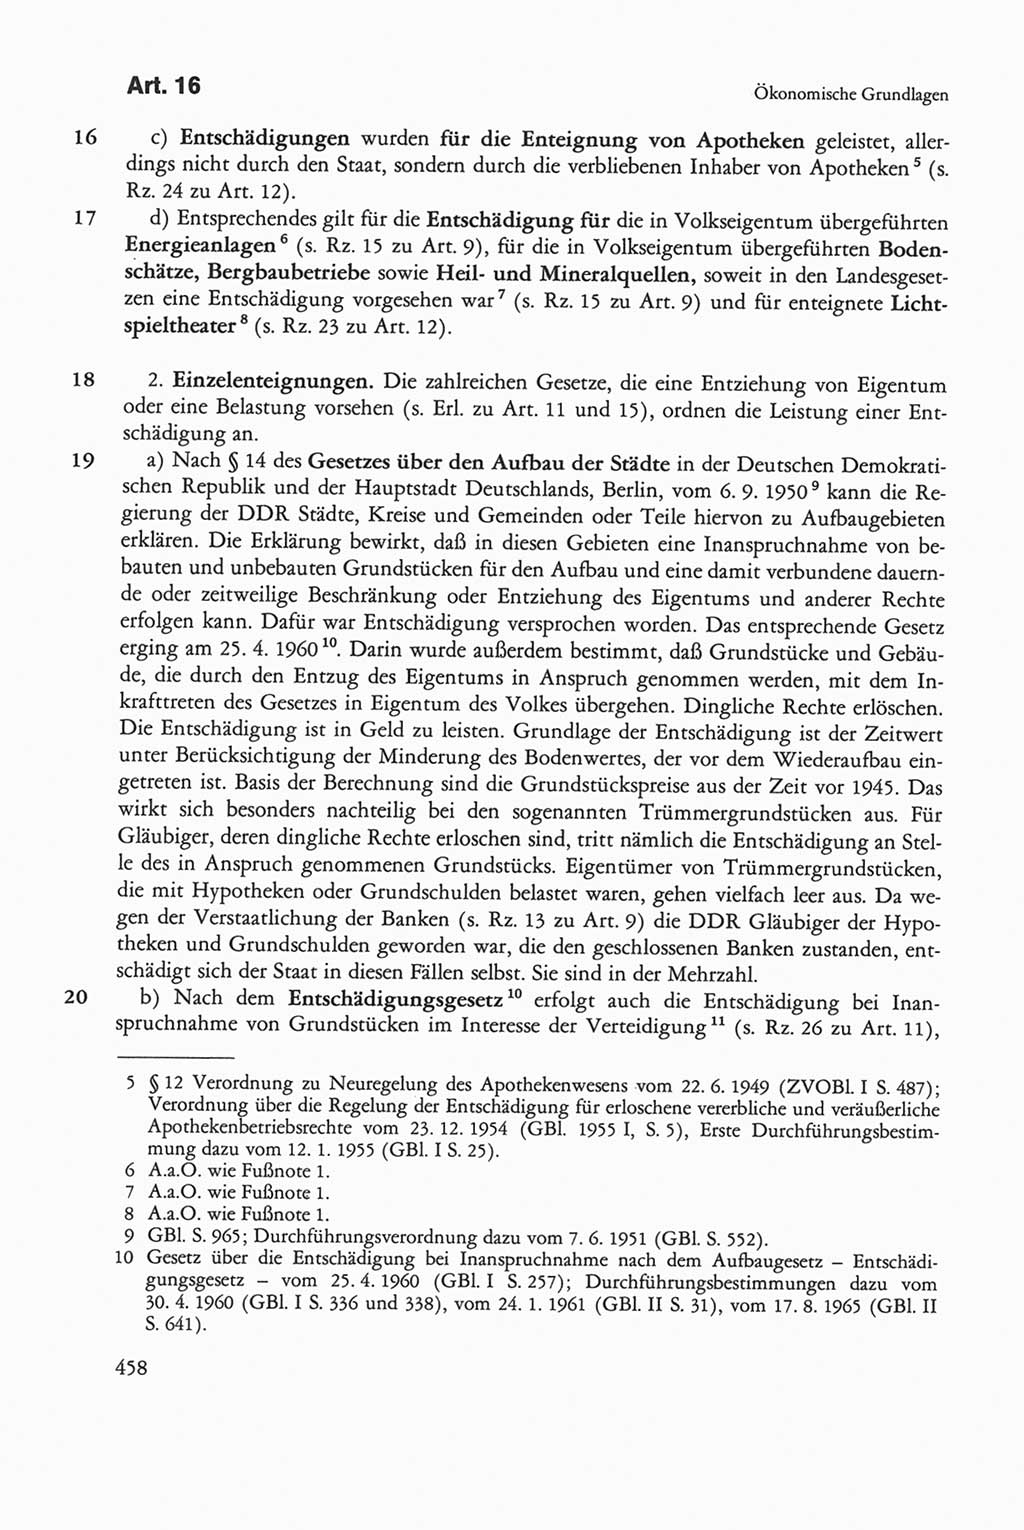 Die sozialistische Verfassung der Deutschen Demokratischen Republik (DDR), Kommentar 1982, Seite 458 (Soz. Verf. DDR Komm. 1982, S. 458)